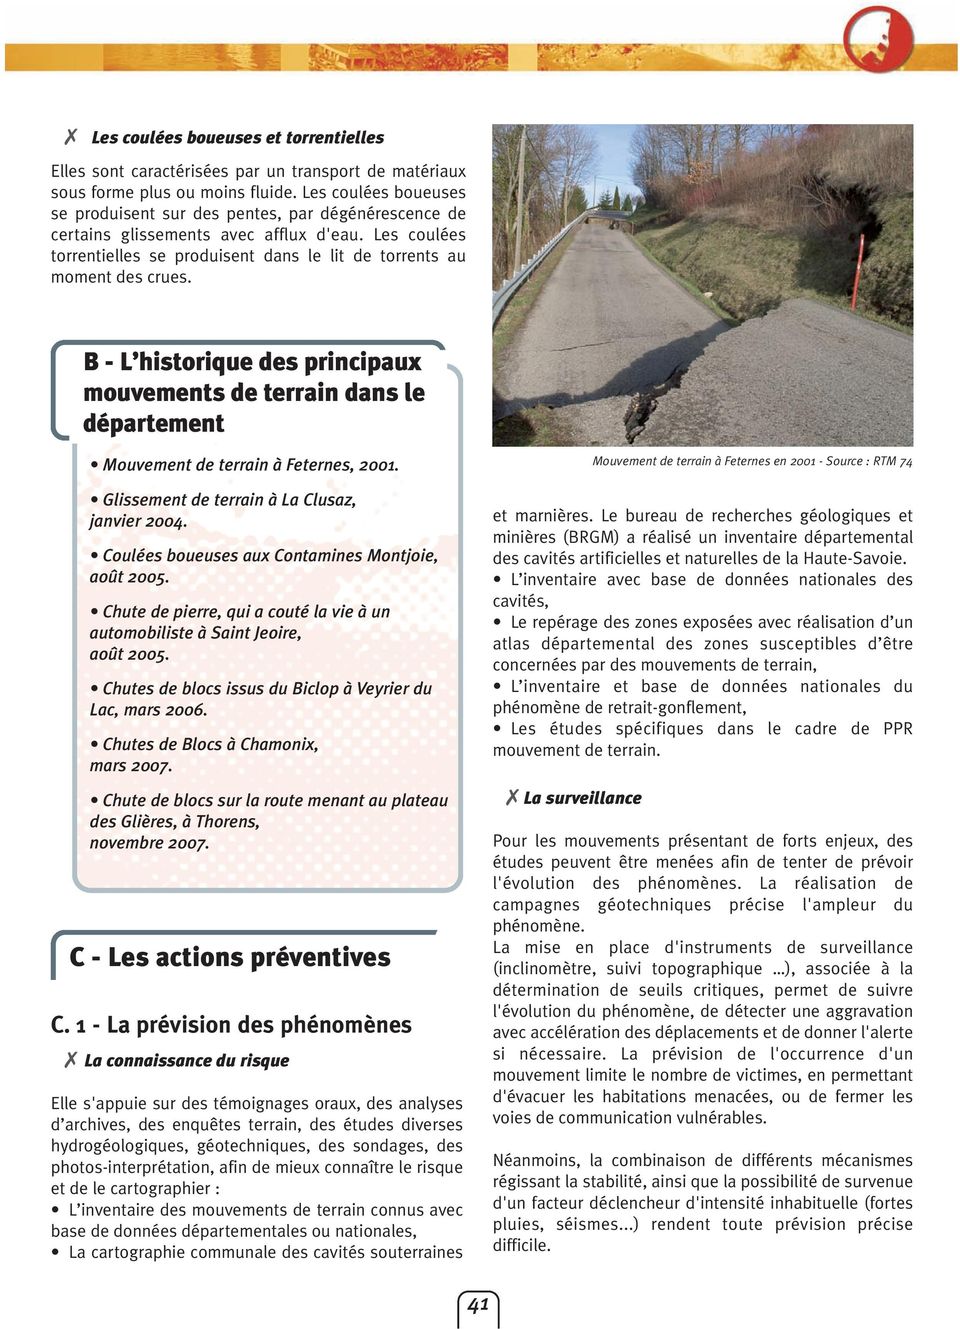 B - L historique des principaux mouvements de terrain dans le département Mouvement de terrain à Feternes, 2001. Glissement de terrain à La Clusaz, janvier 2004.